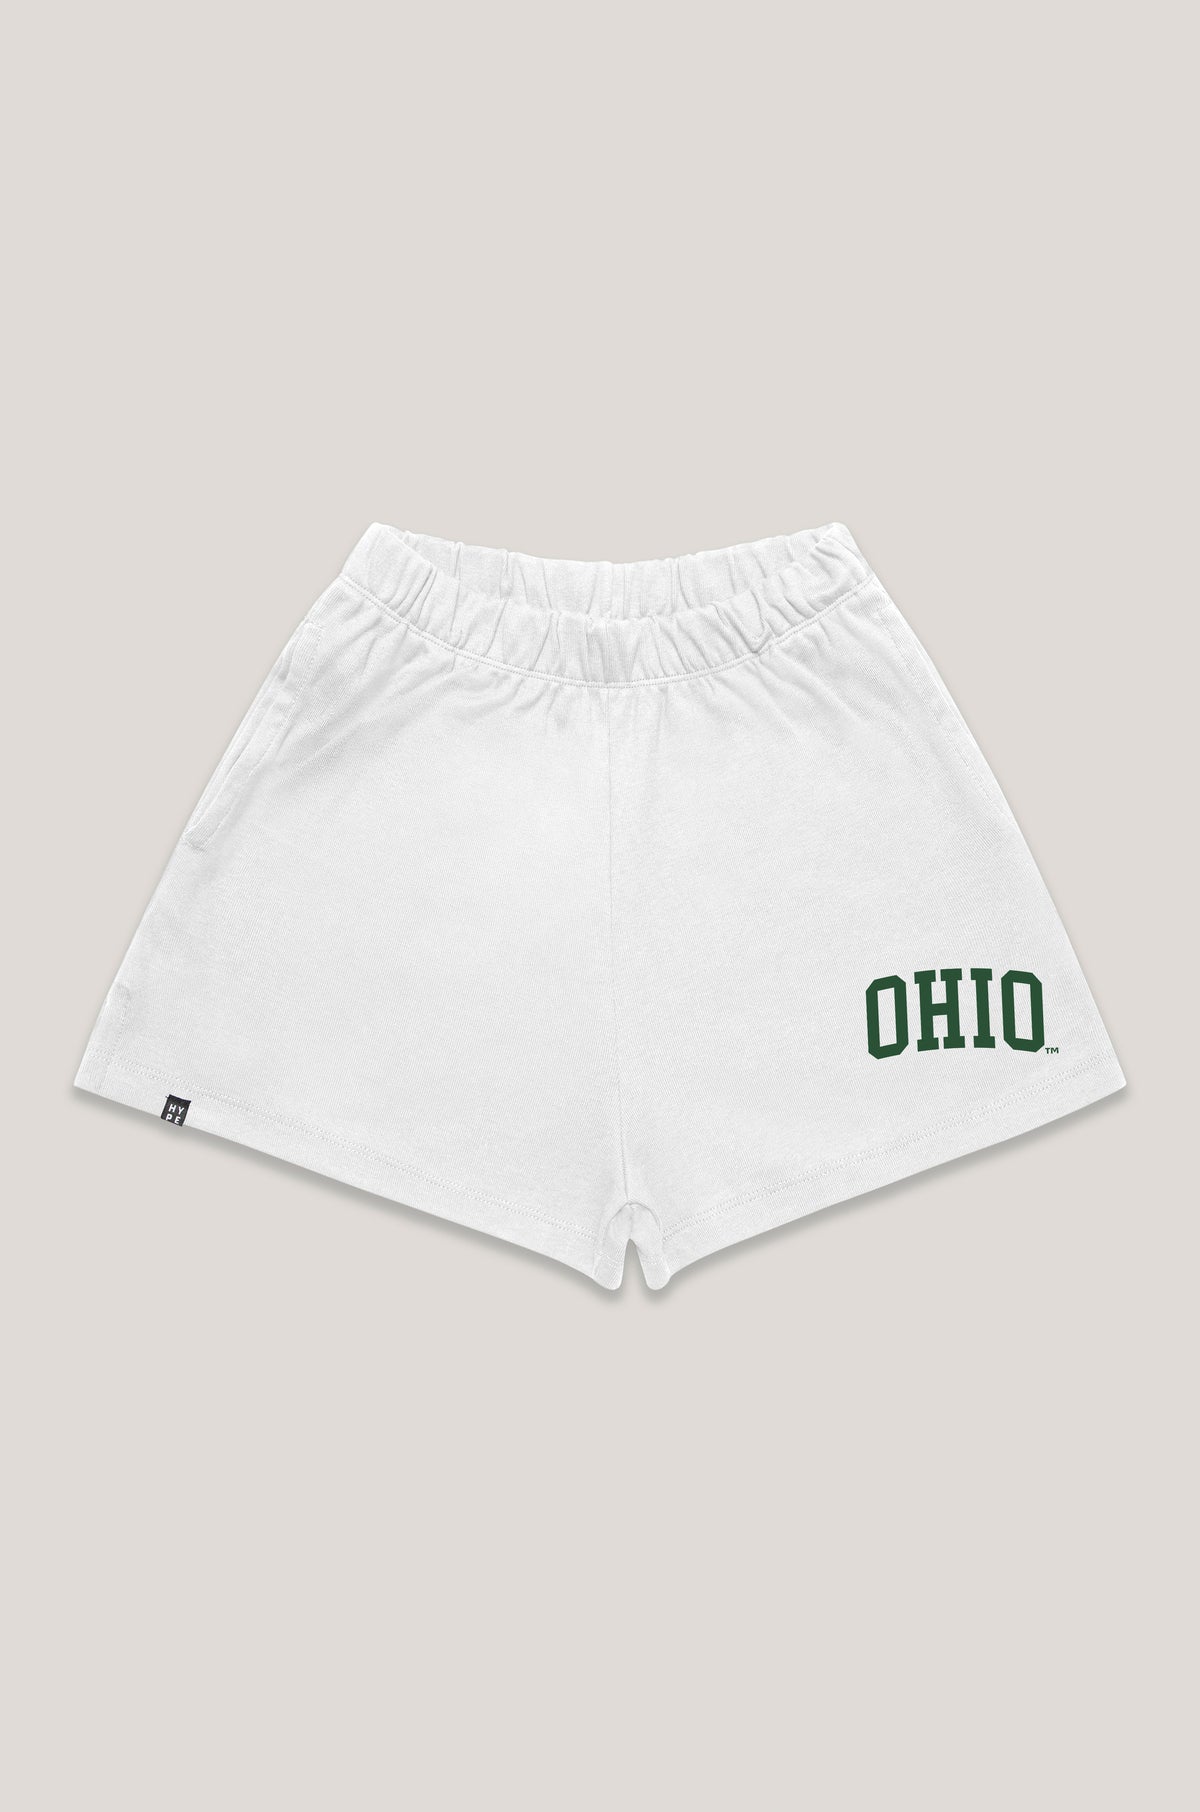 Ohio University Track Shorts